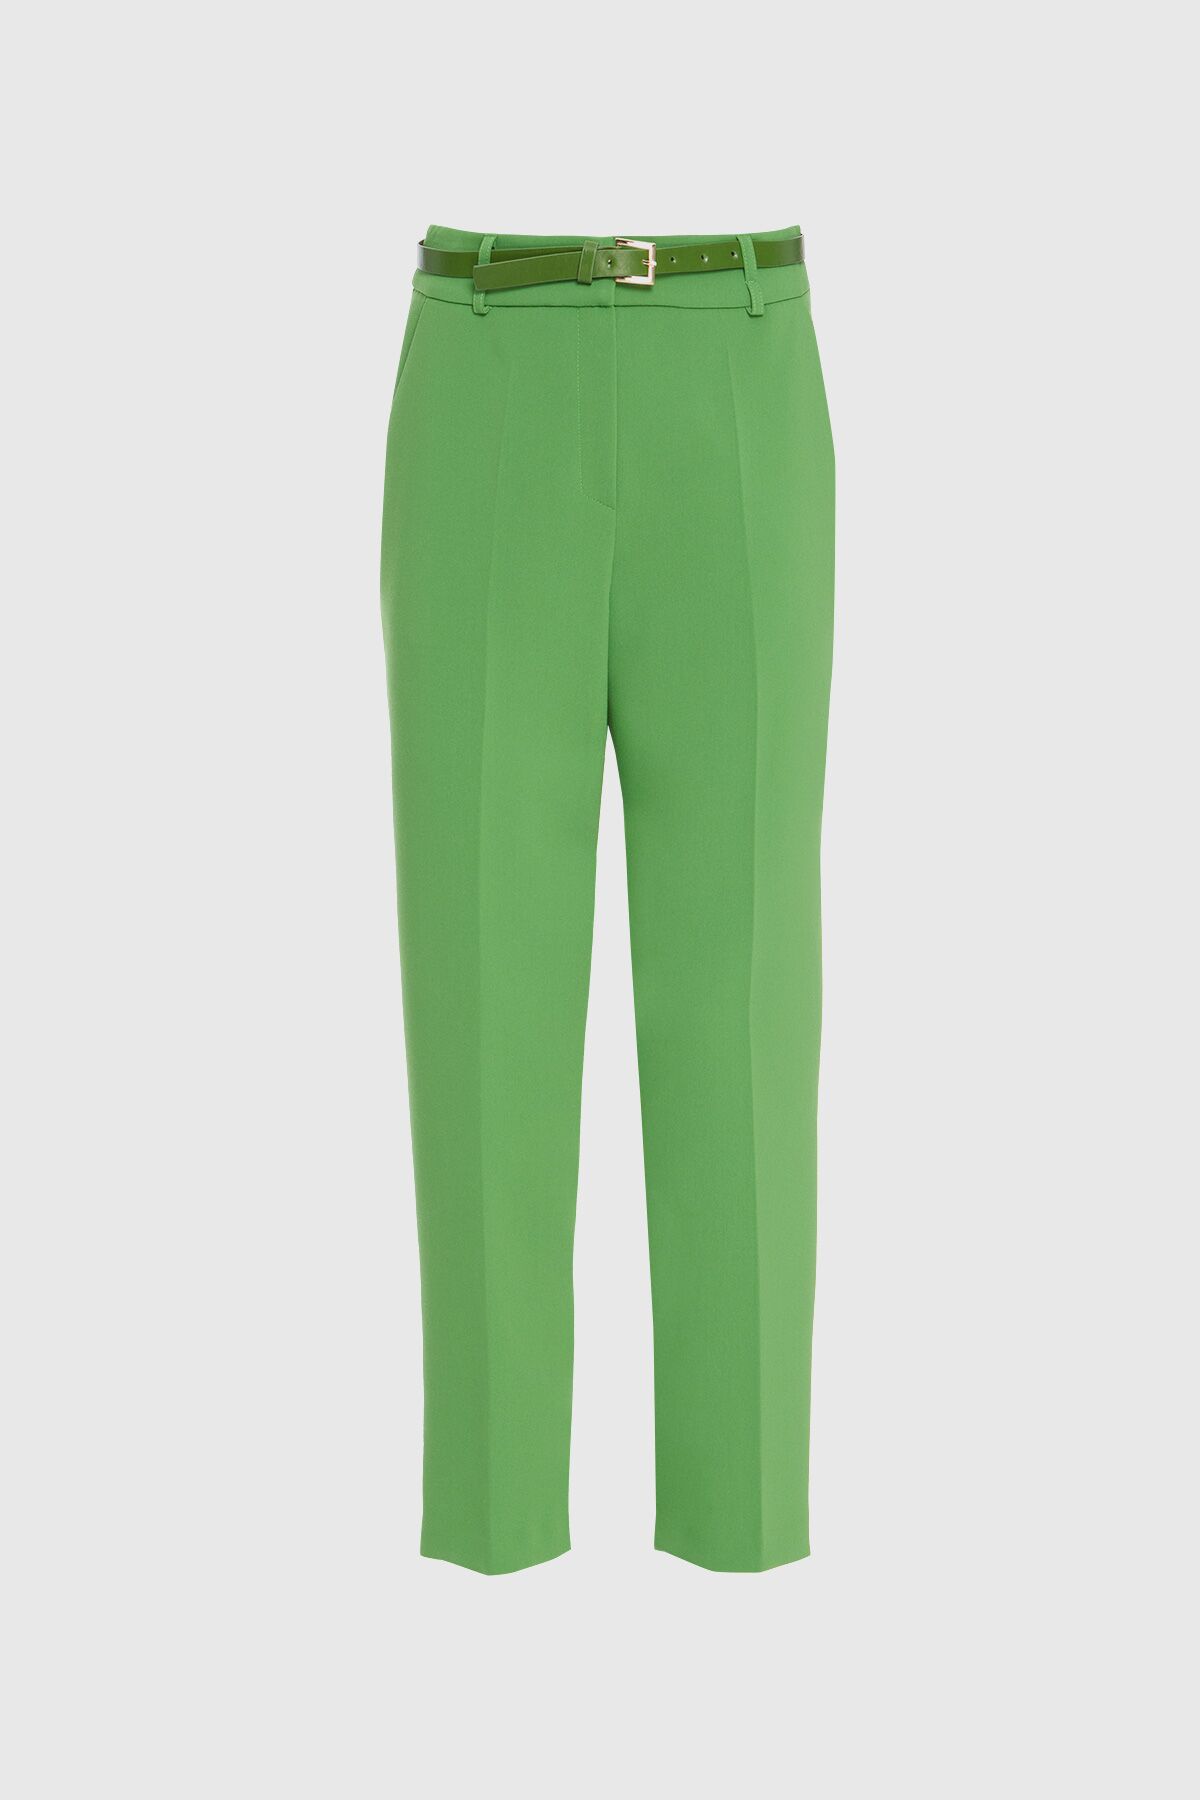 KIWE - Straight Carrot Leg Pocketed Green Trousers